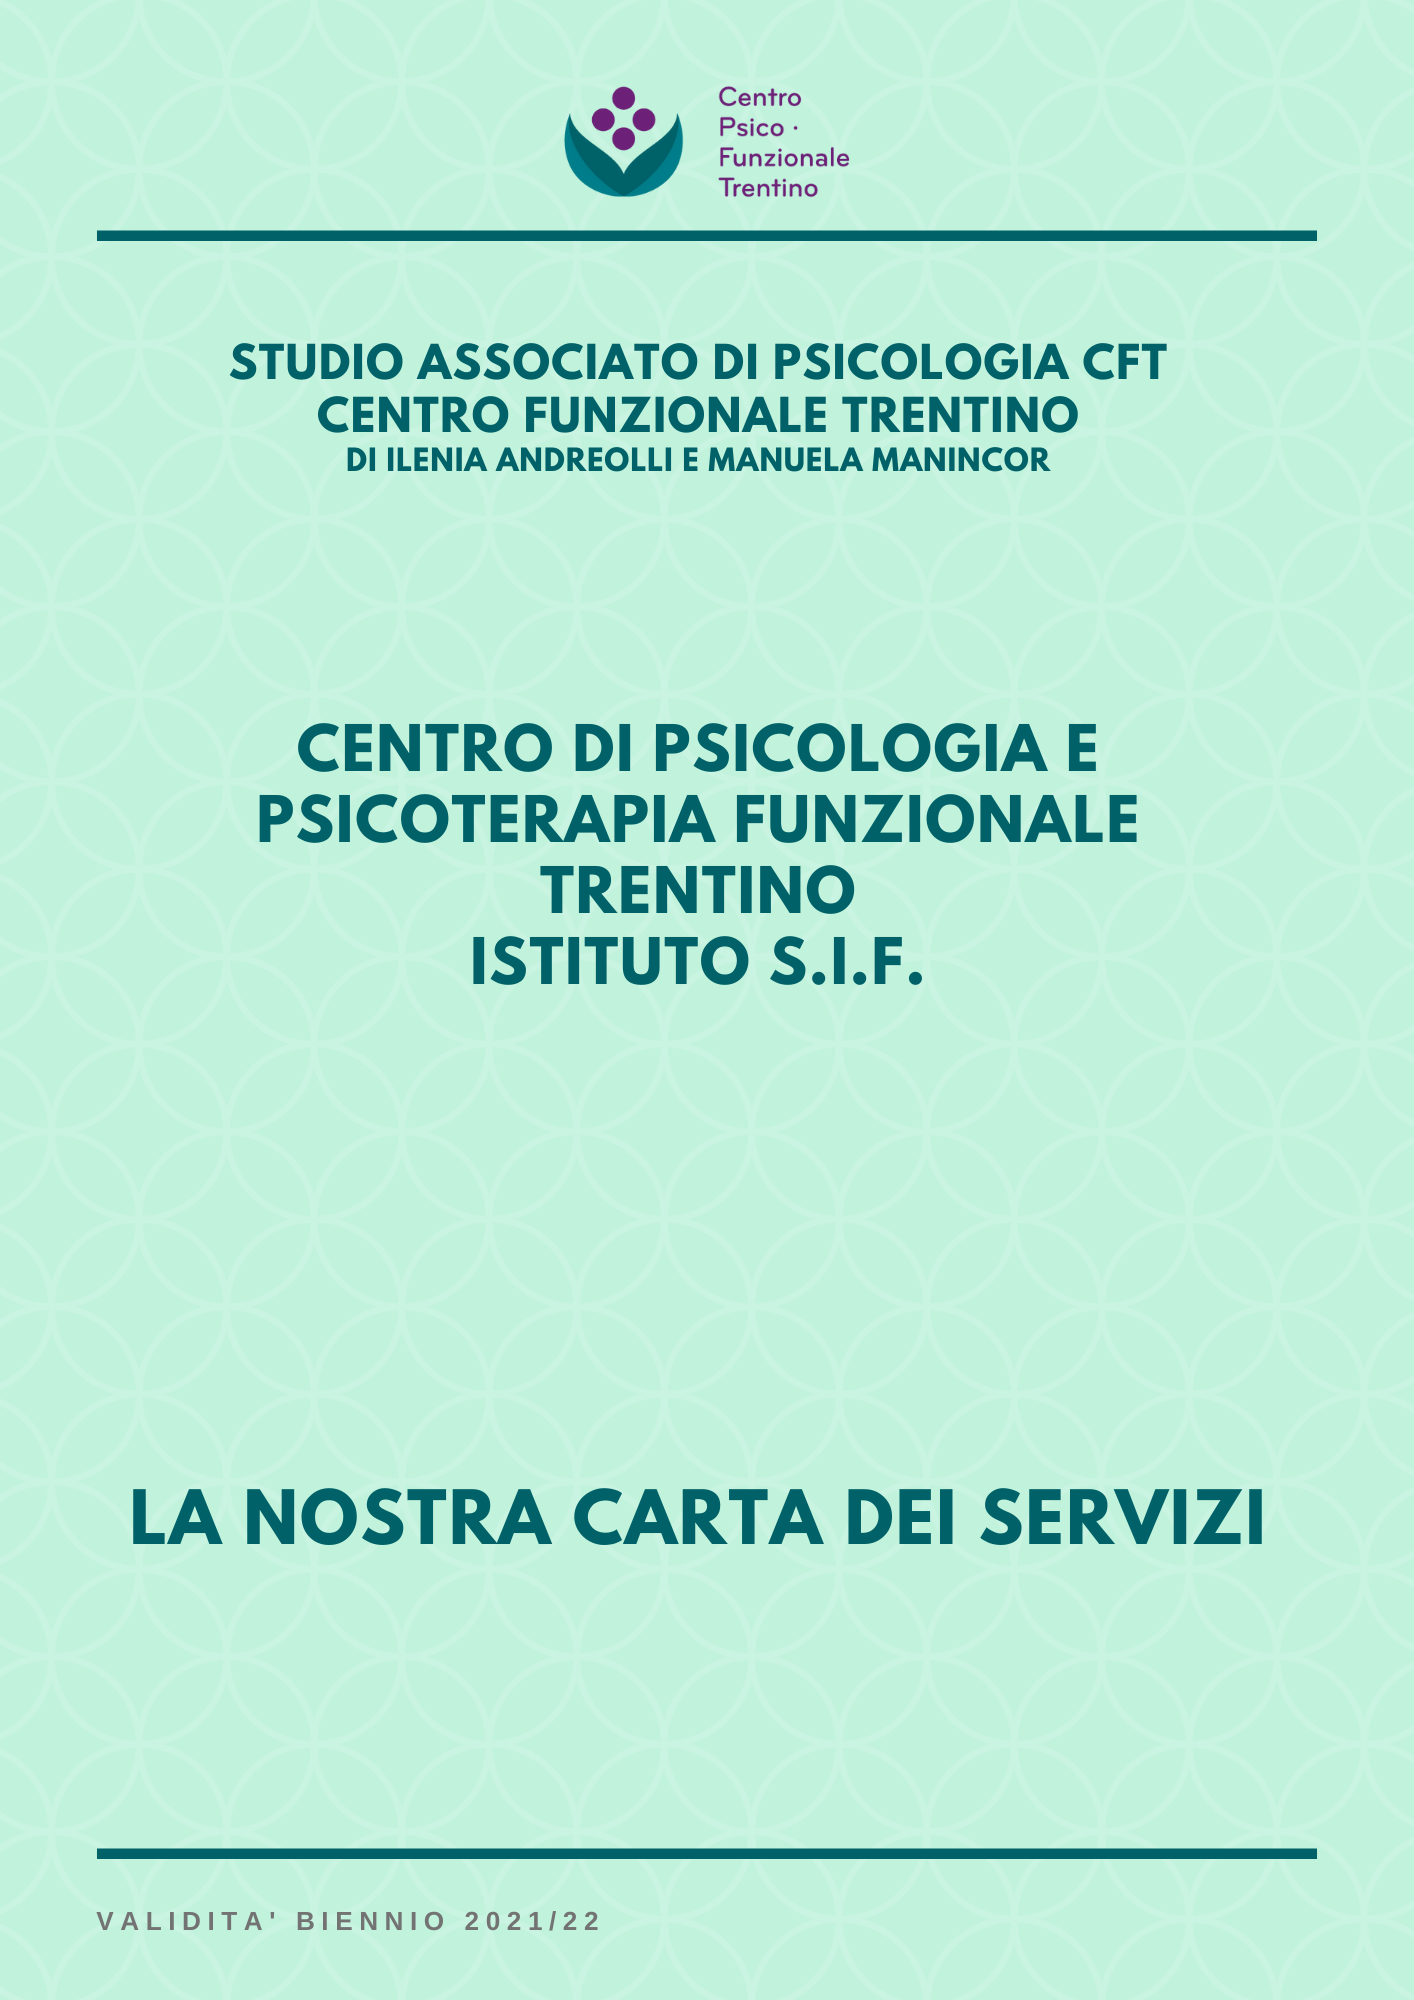 La carta dei servizi dello STUDIO ASSOCIATO DI PSICOLOGIA CFT